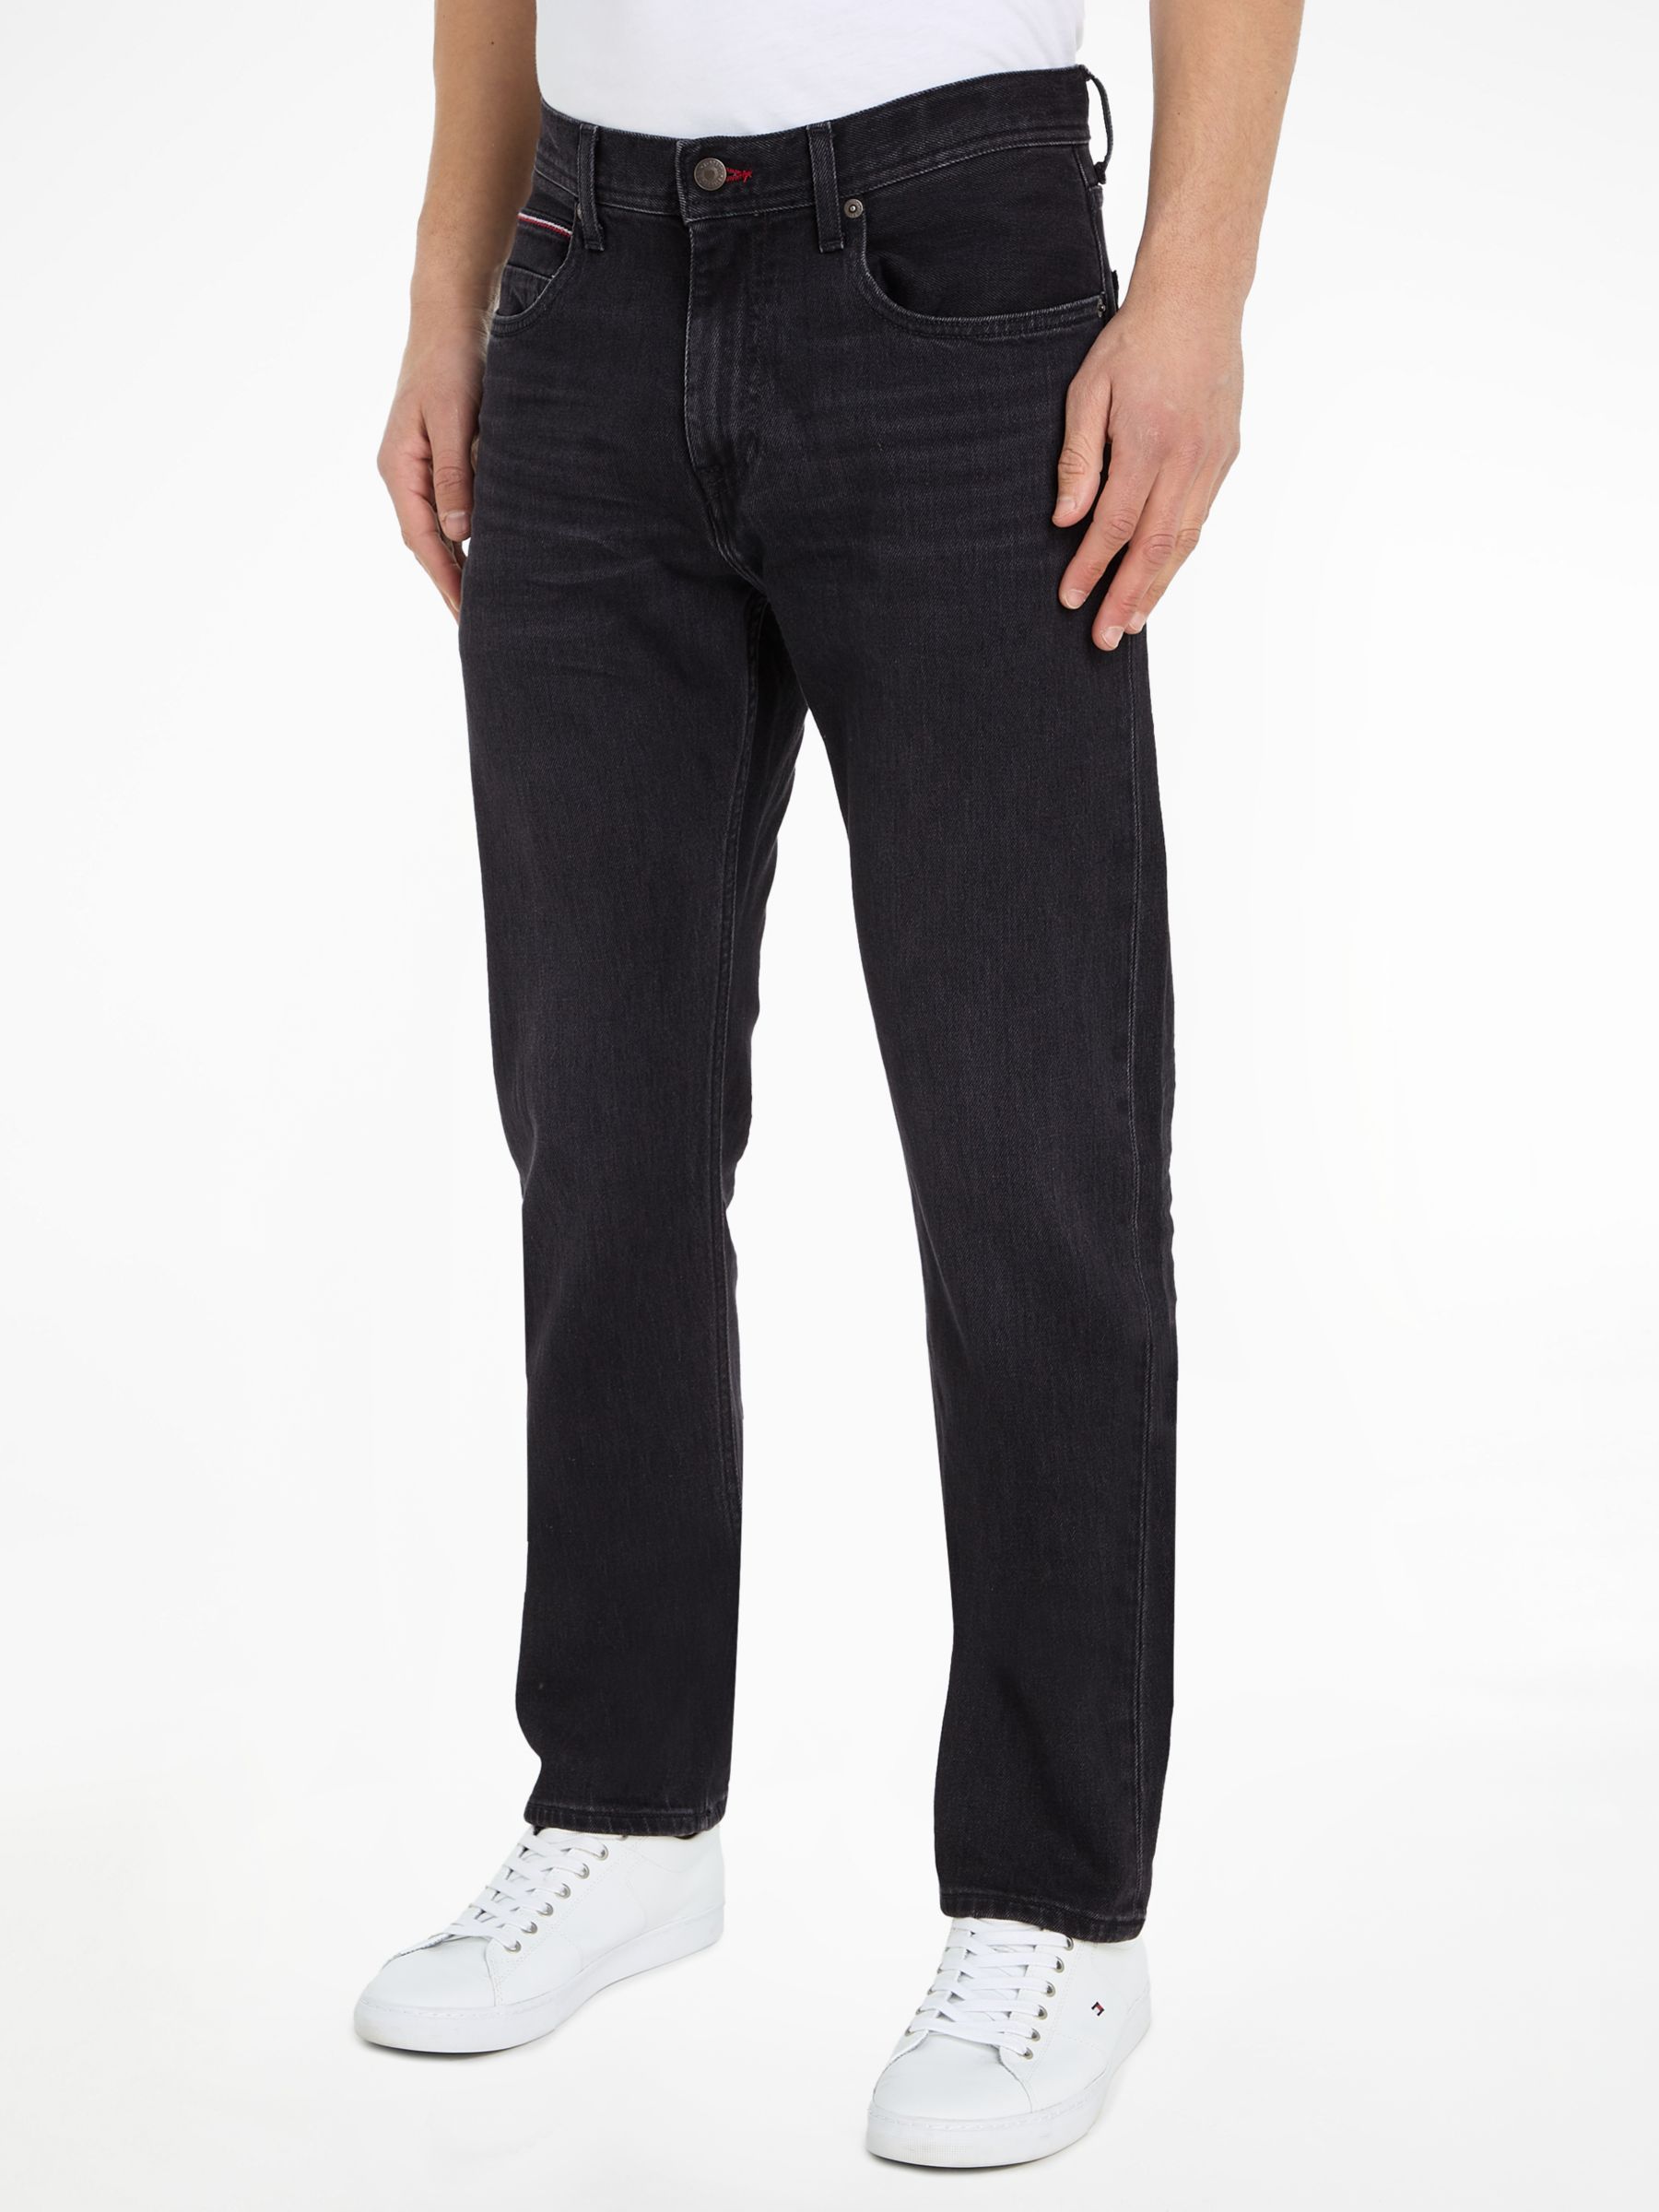 Tommy Hilfiger Mercer Jeans, Black at John Lewis & Partners